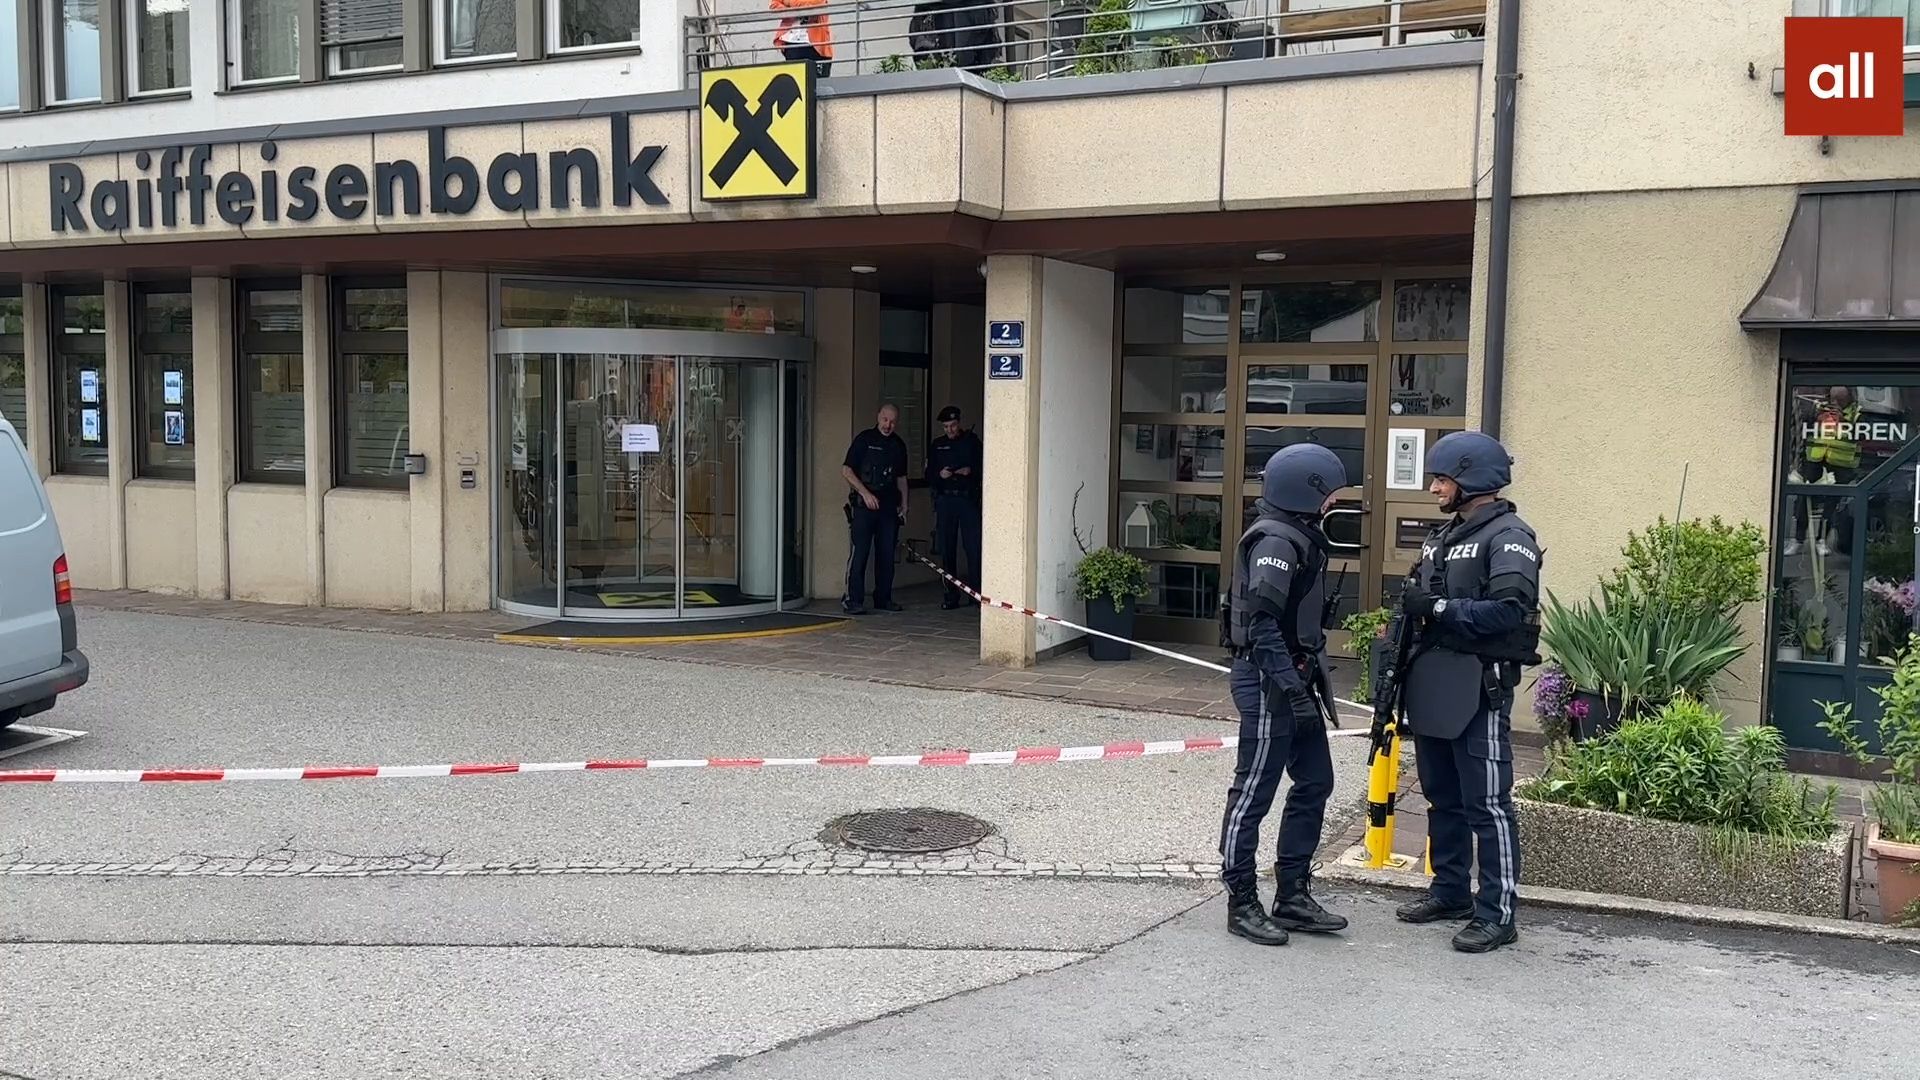 Banküberfall in Lochau - Polizei sucht flüchtigen Täter mit Bildern